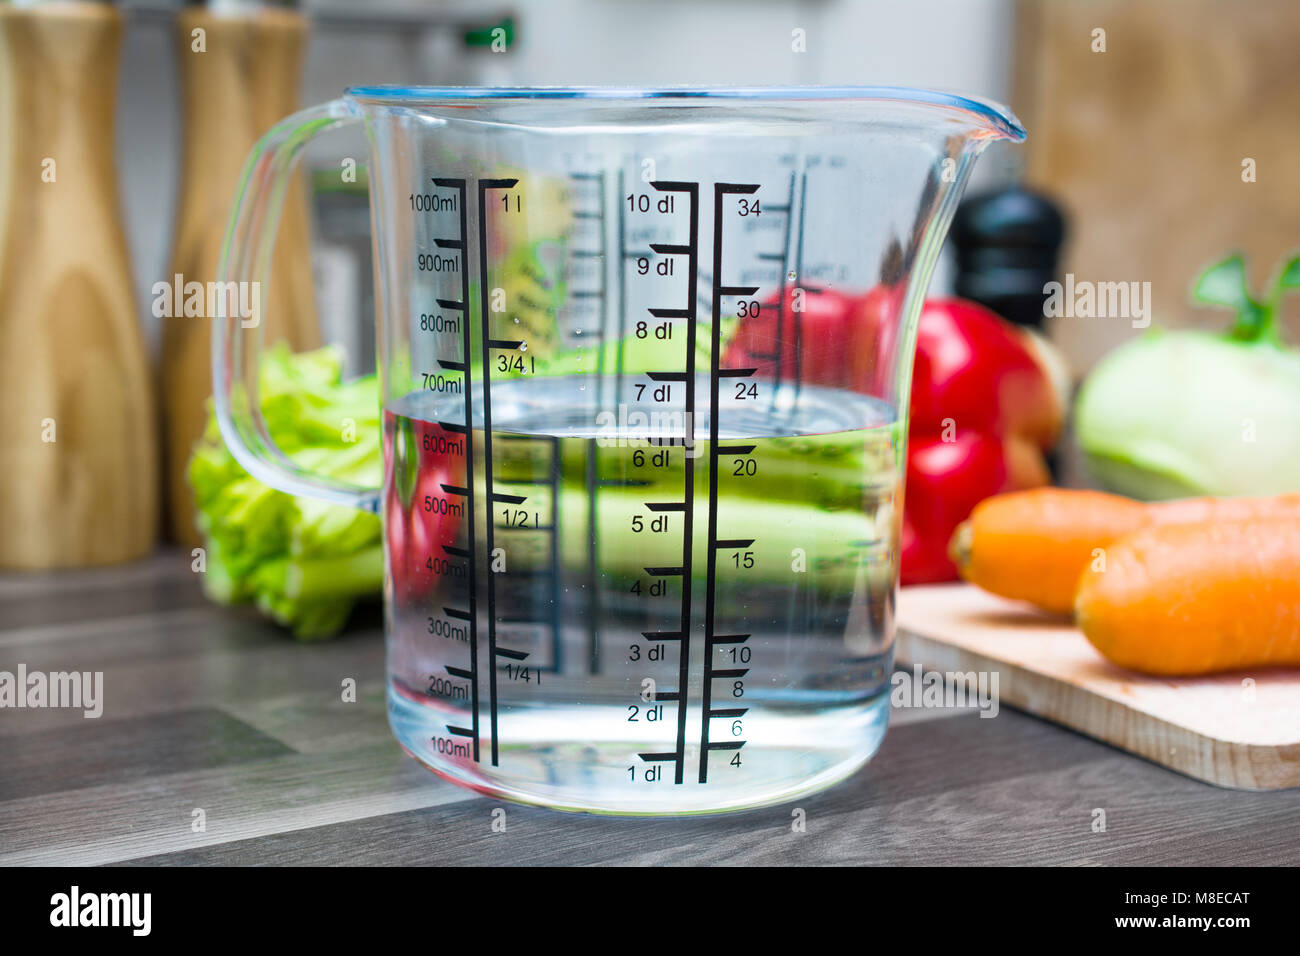 600ml / 6dl di acqua in una coppa di misurazione su un bancone cucina con  verdure Foto stock - Alamy